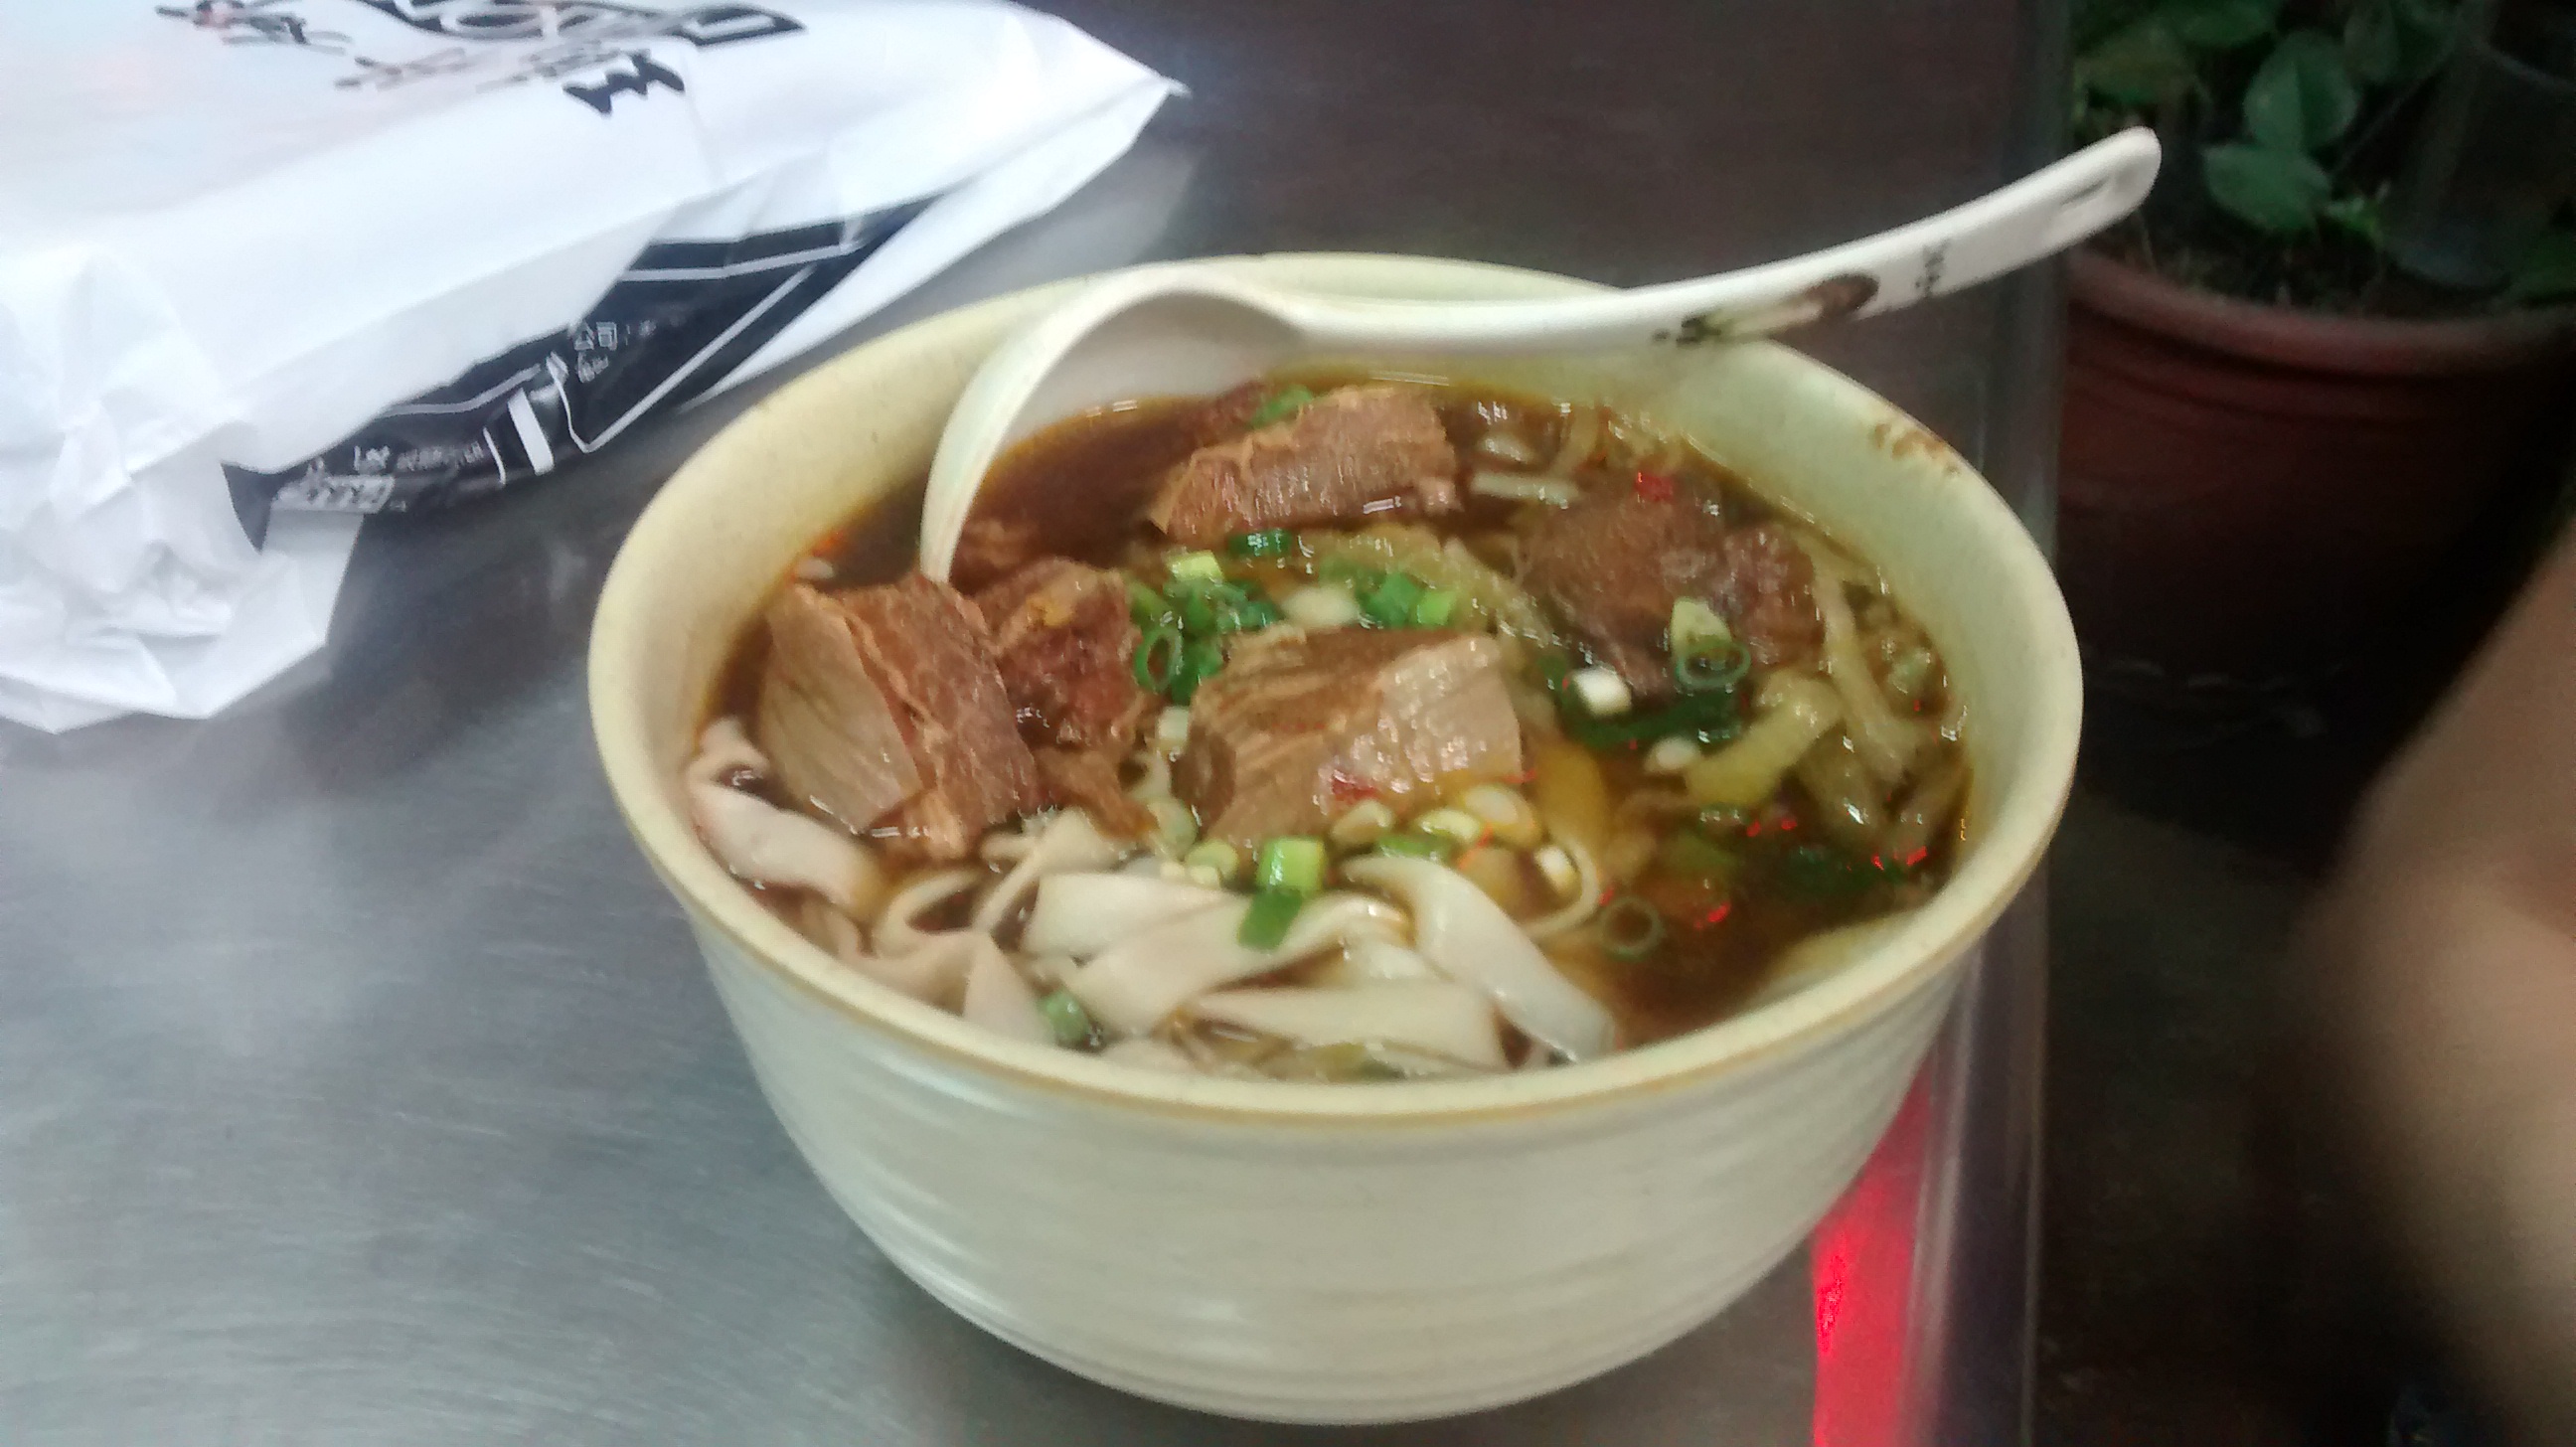 Beef noodle
soup